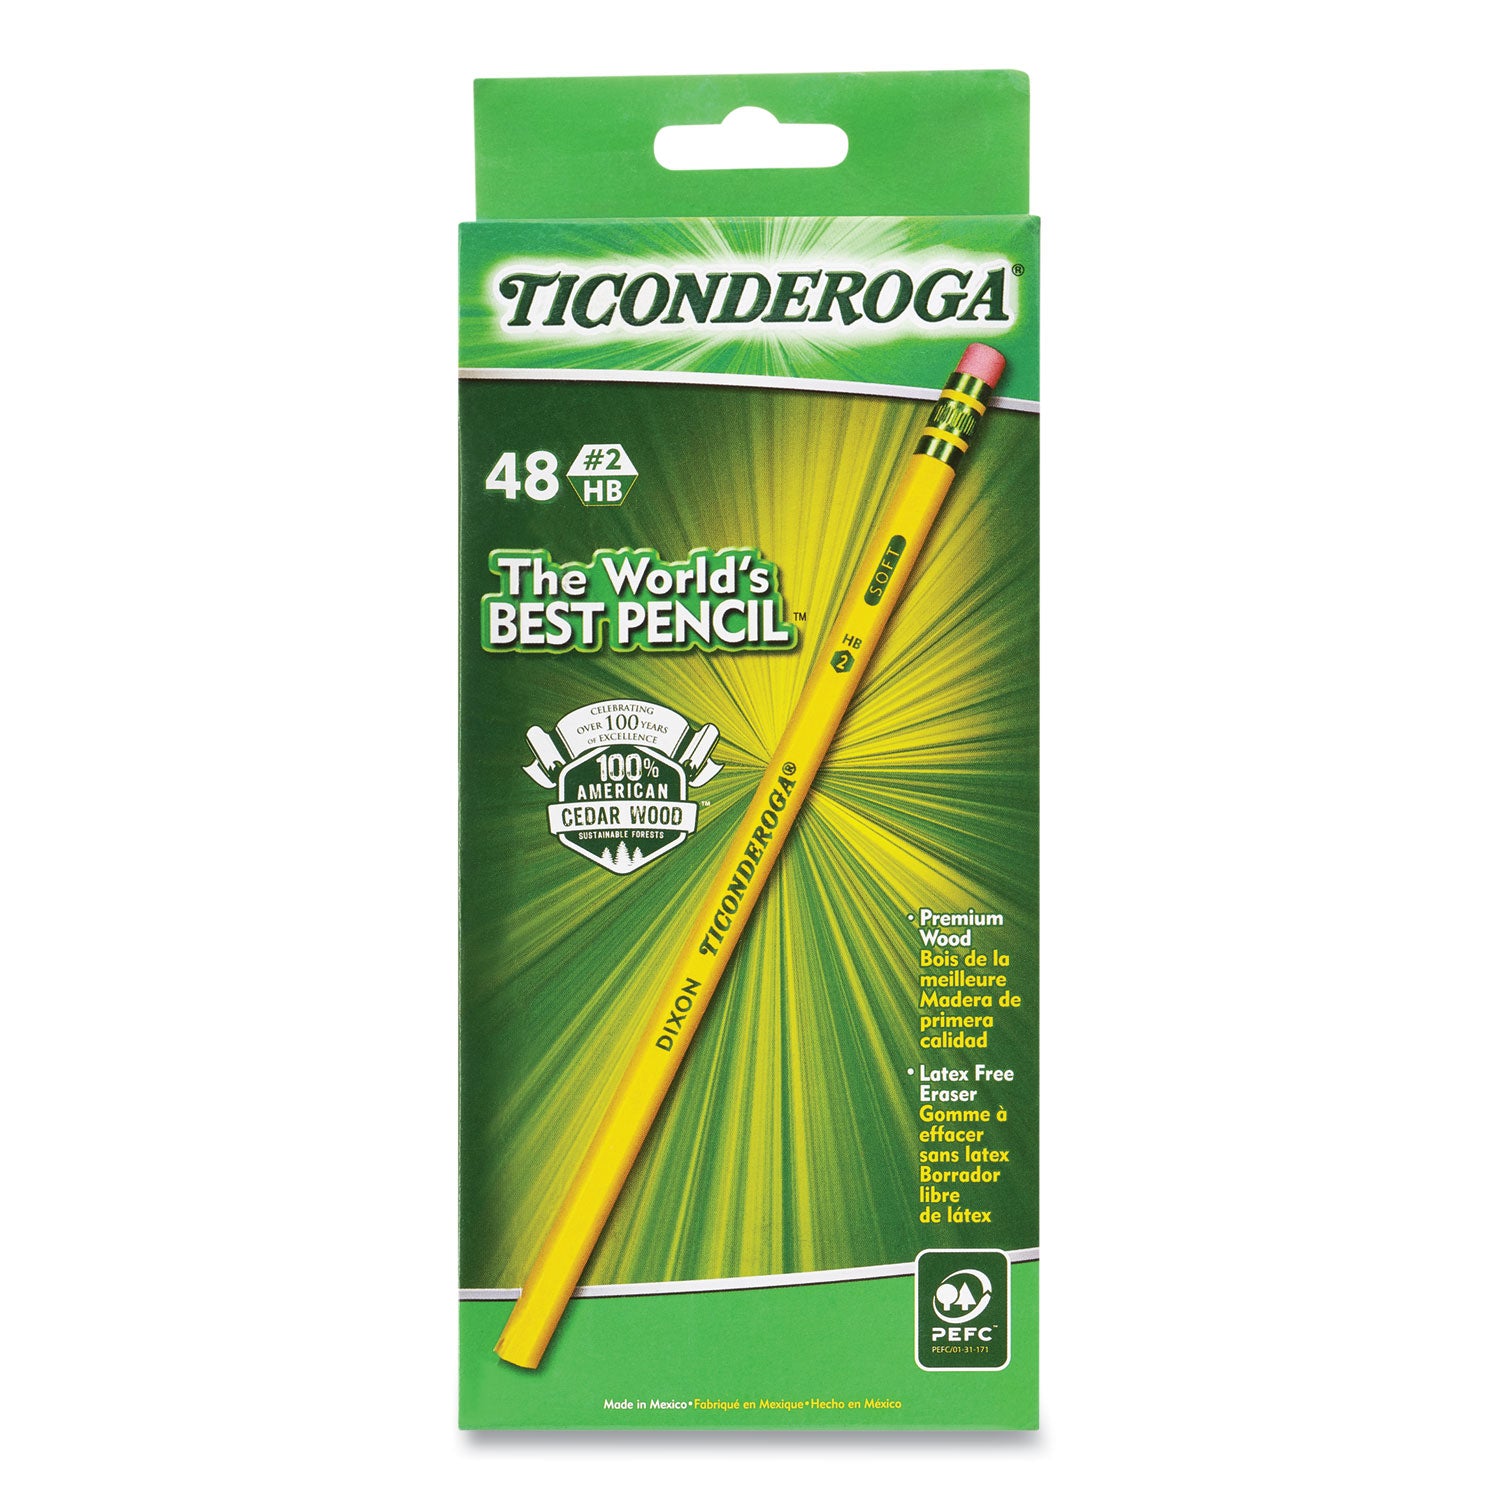 pencils-hb-#2-black-lead-yellow-barrel-48-pack_dixx13922x - 1